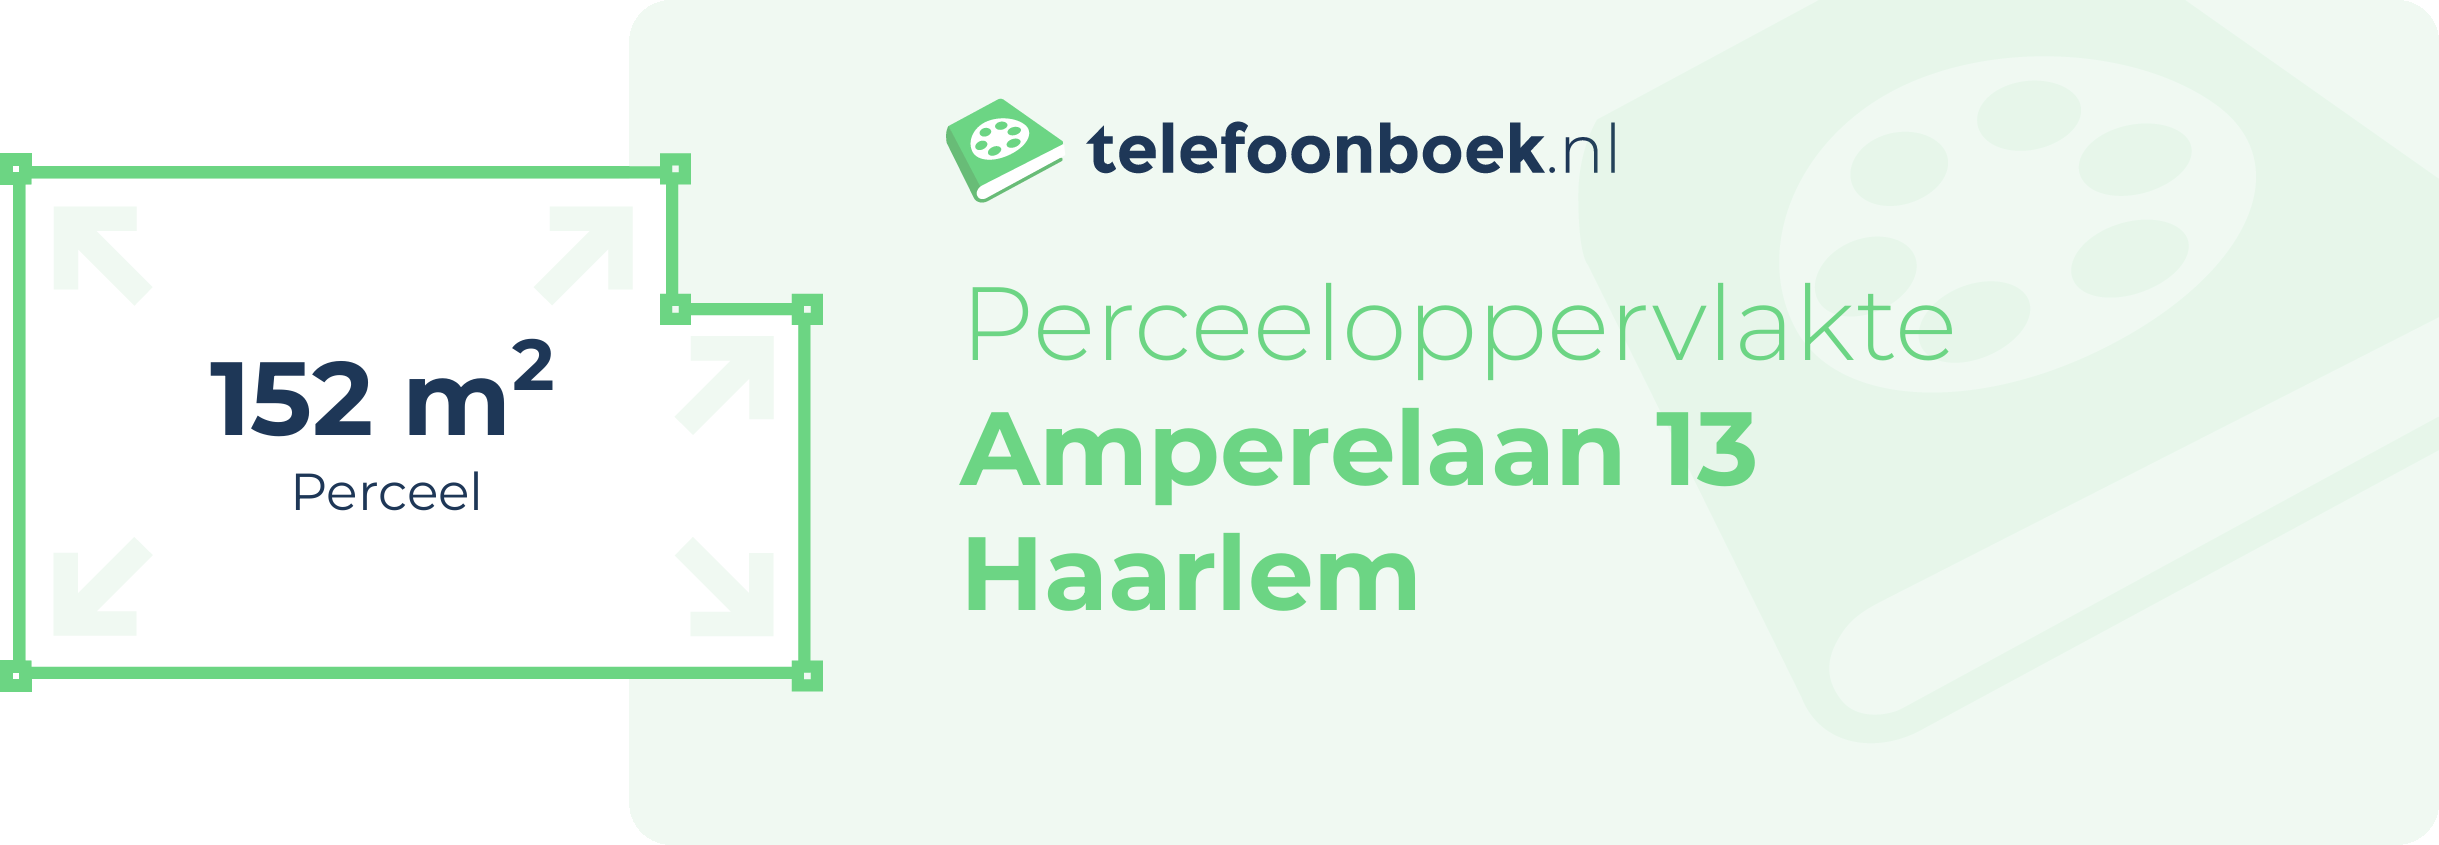 Perceeloppervlakte Amperelaan 13 Haarlem